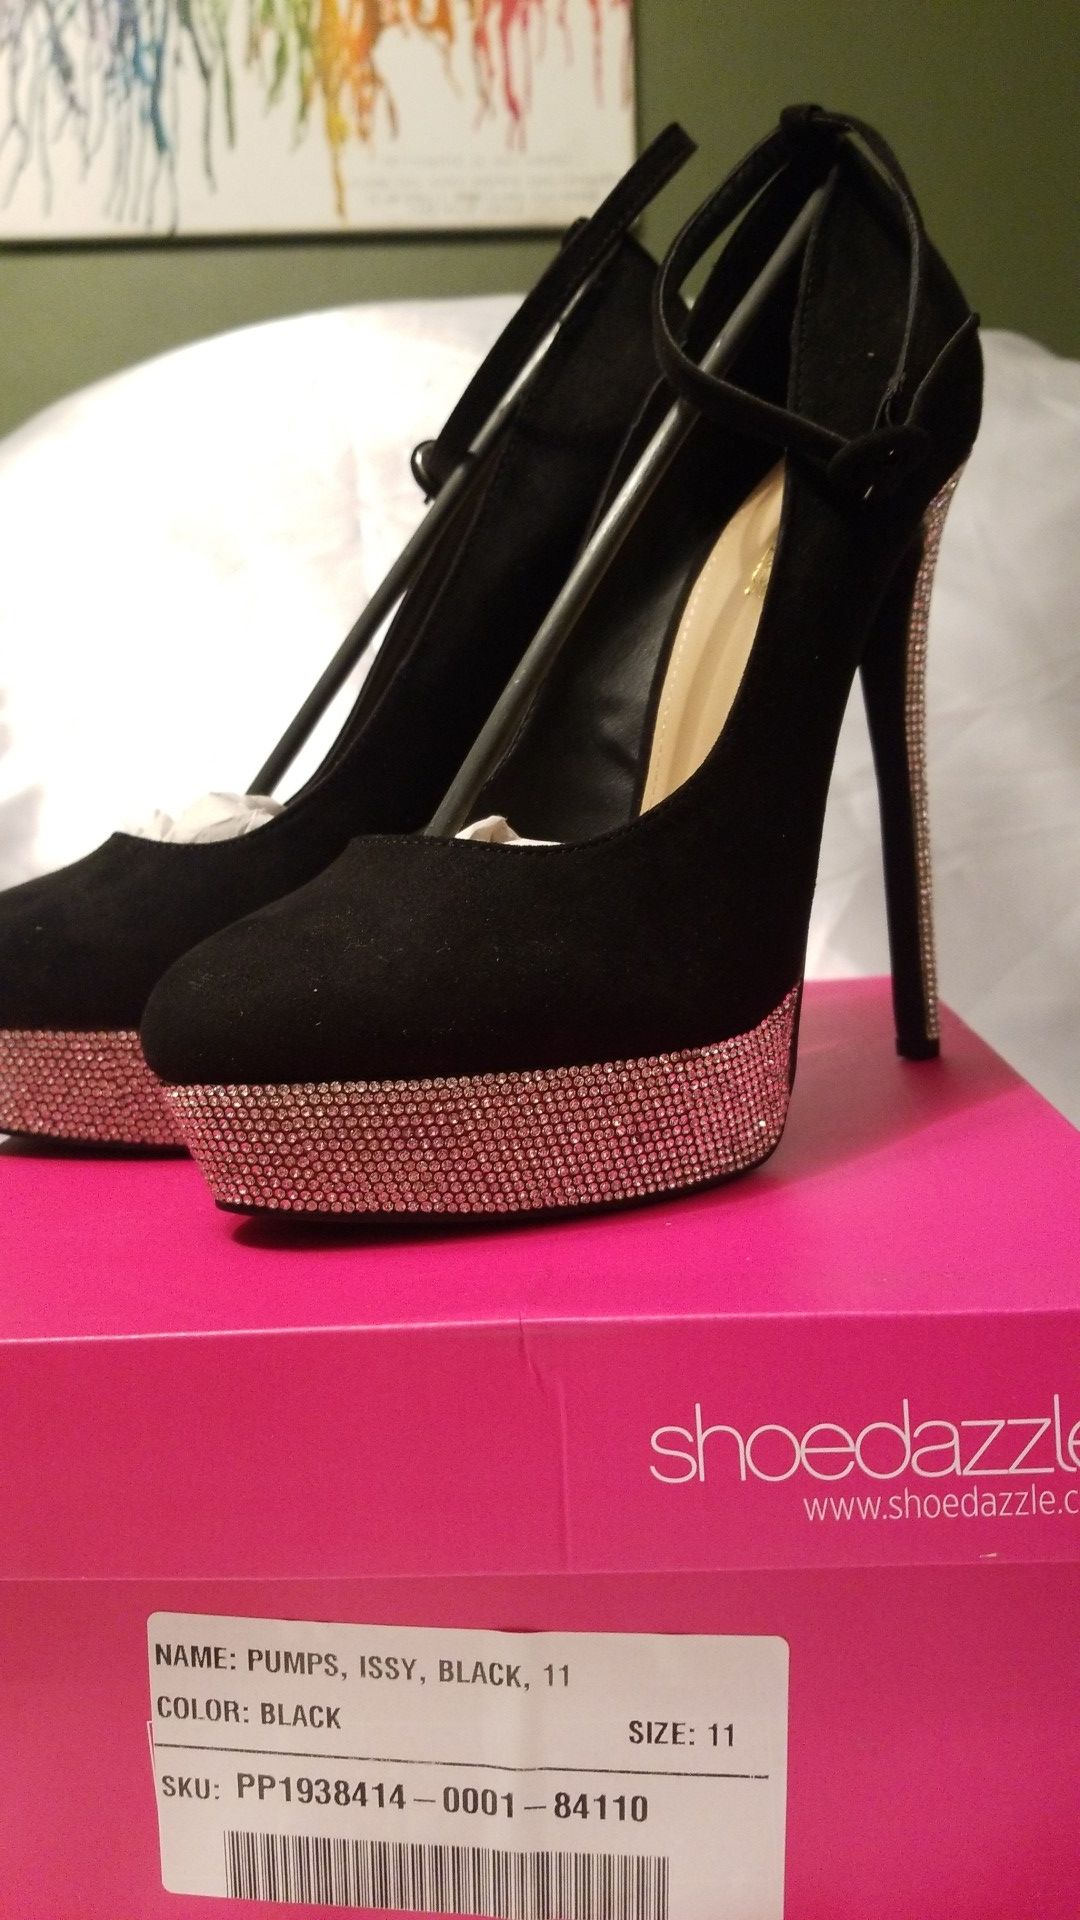 Size 11 womens heels